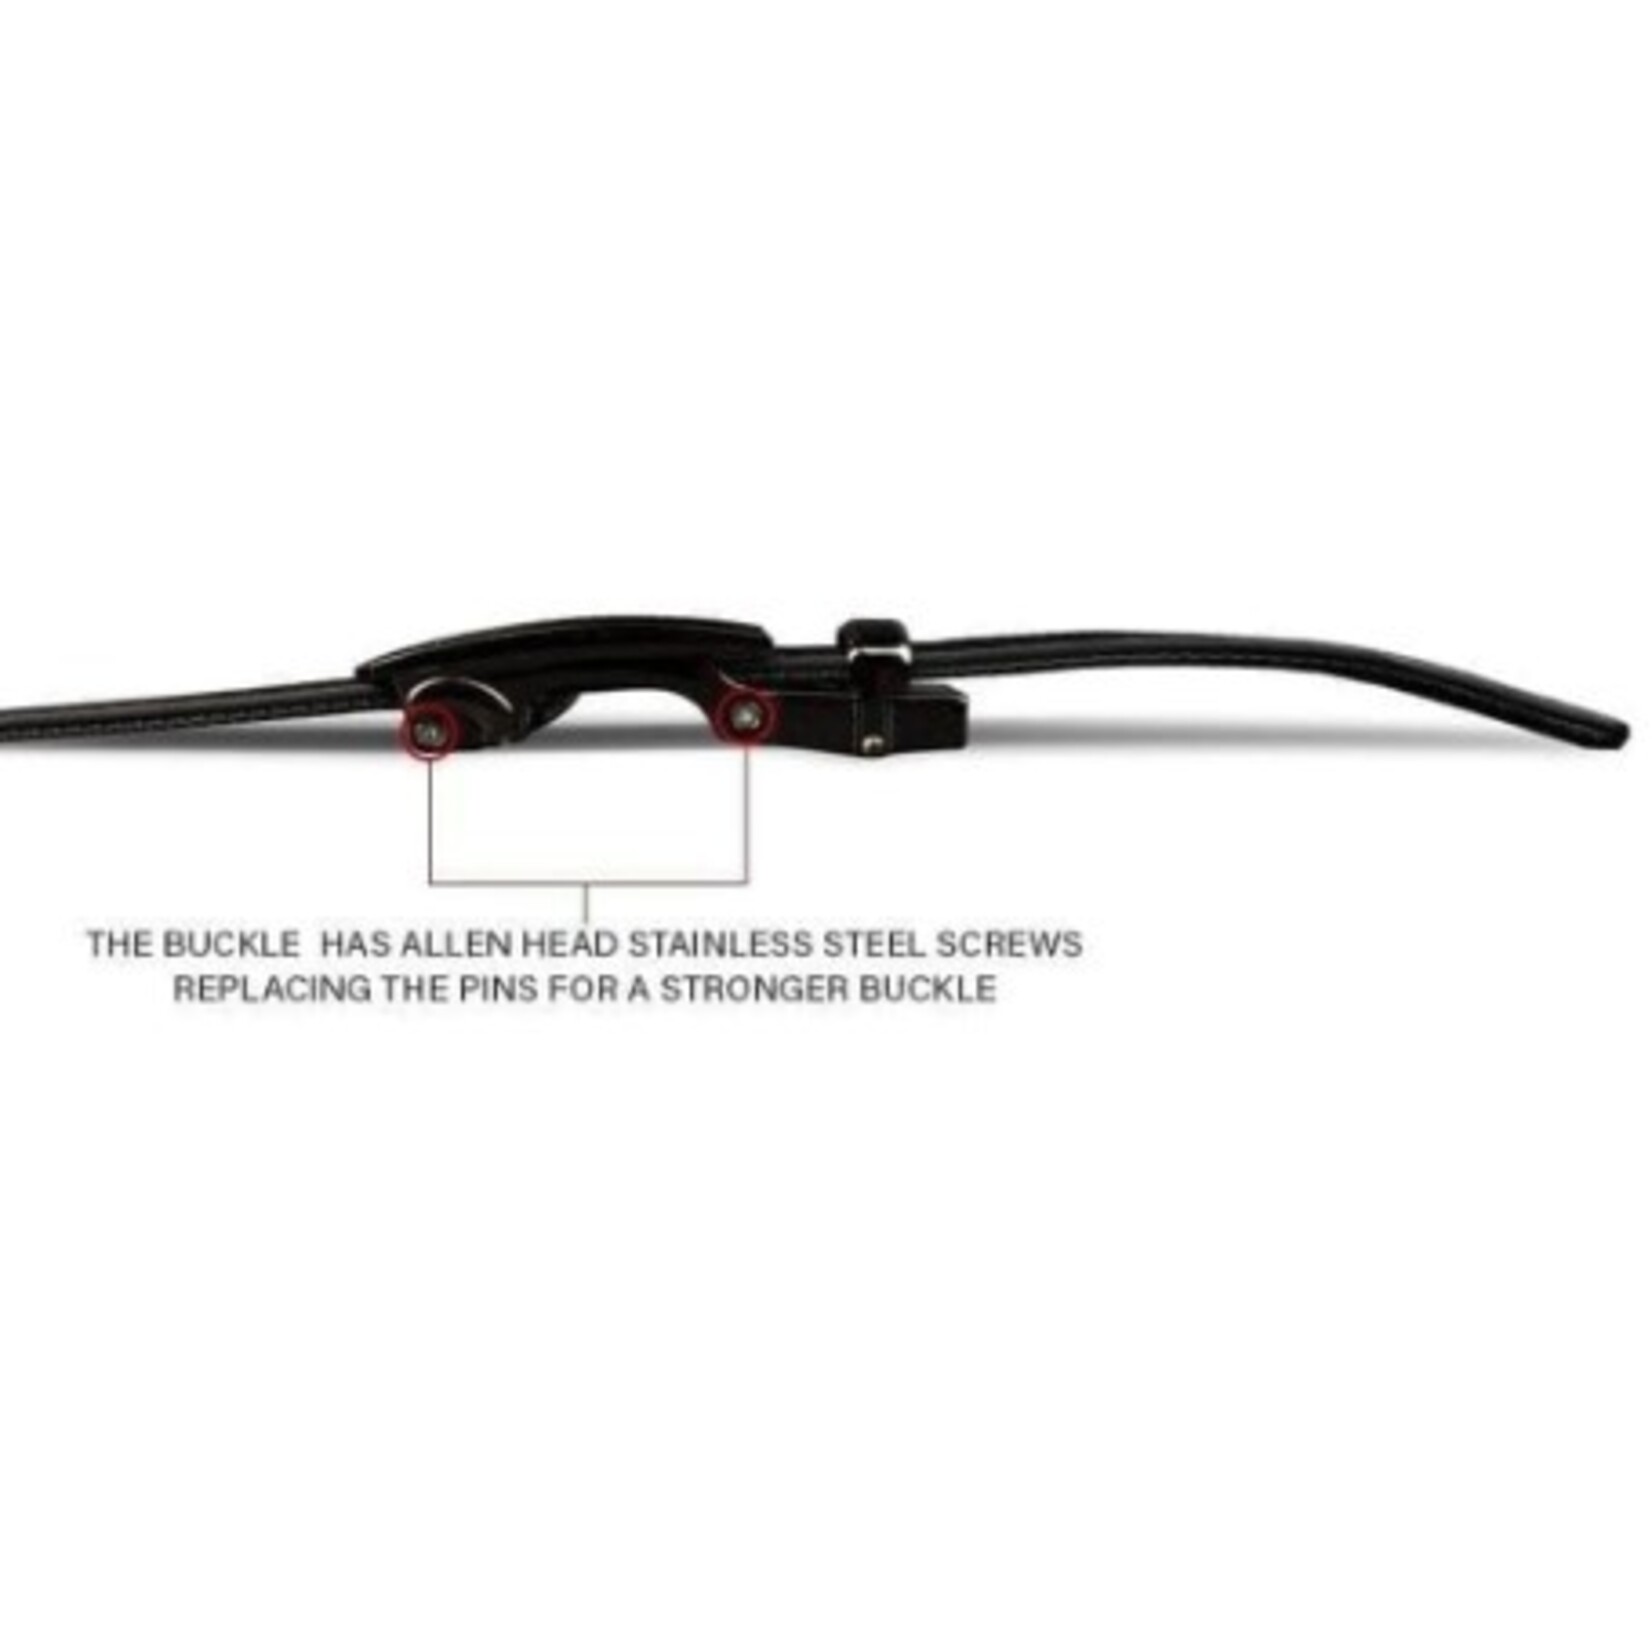 NexBelt Bond Carbon Black 1 3/8" EDC Gun Belt